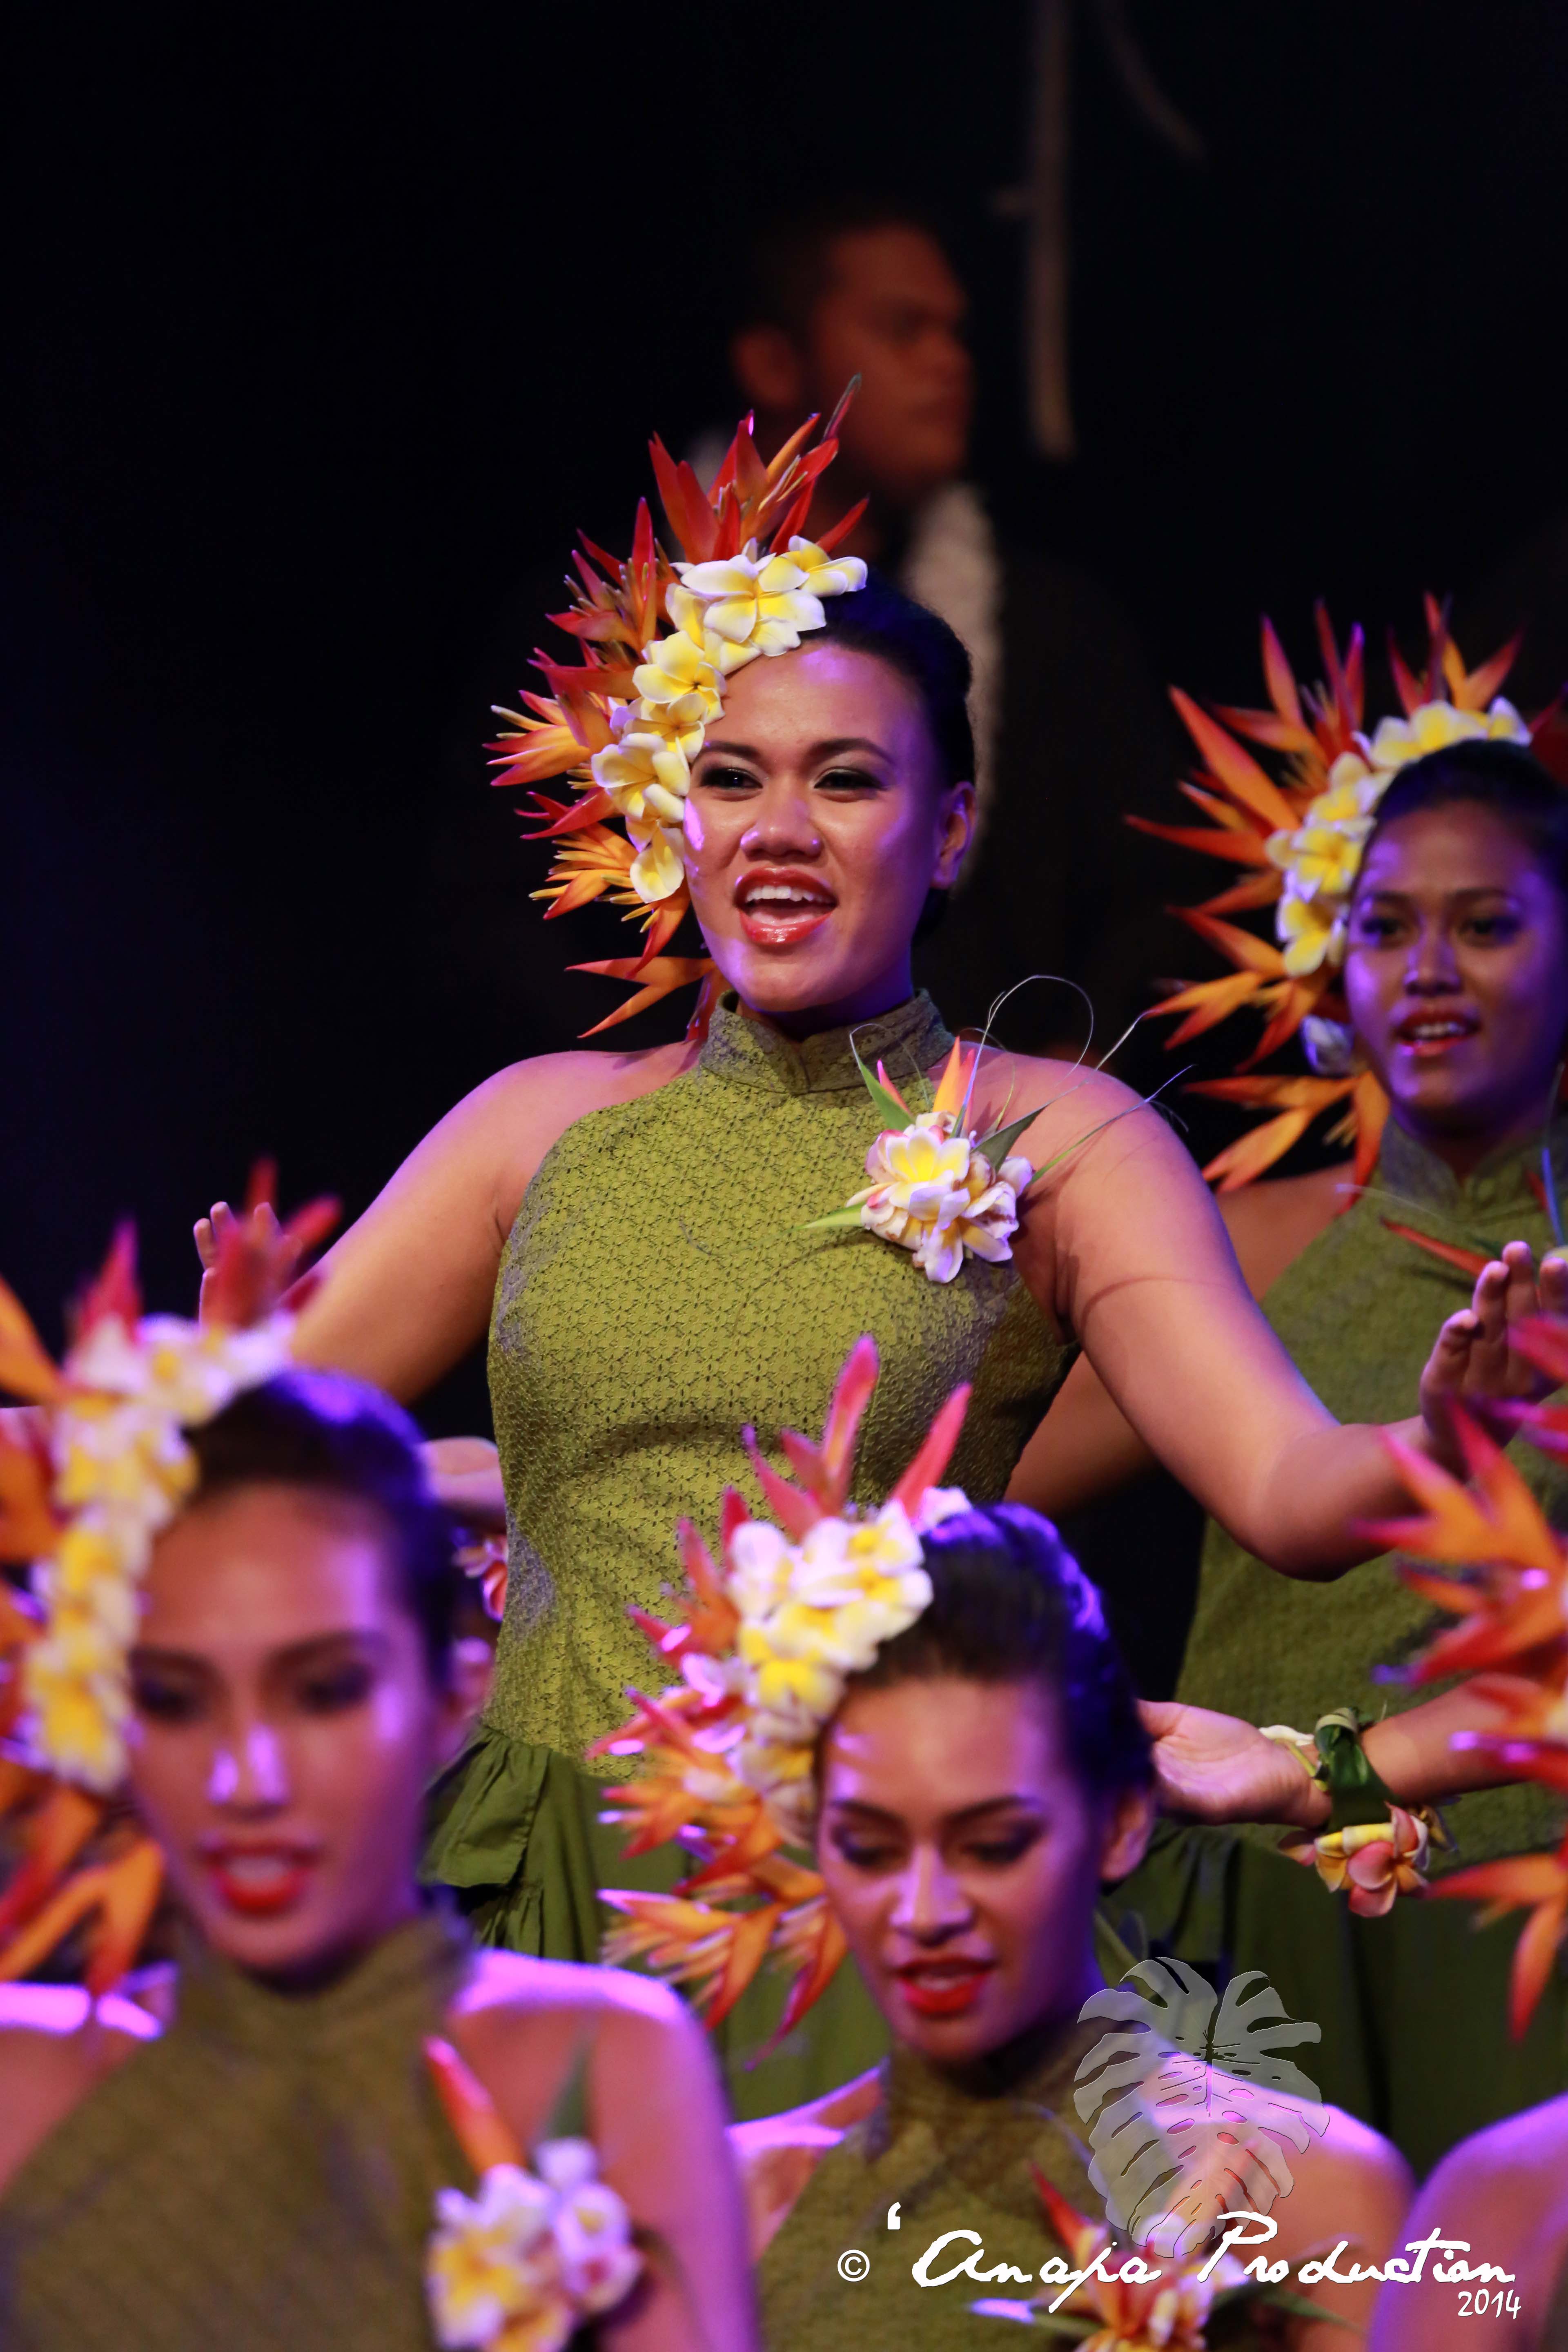 Ori i Tahiti est né grâce à ce concours et a participé pour la première fois au Heiva i Tahiti cette année en Hura Tau, récompensé par le prix du Meilleur costume végétal.